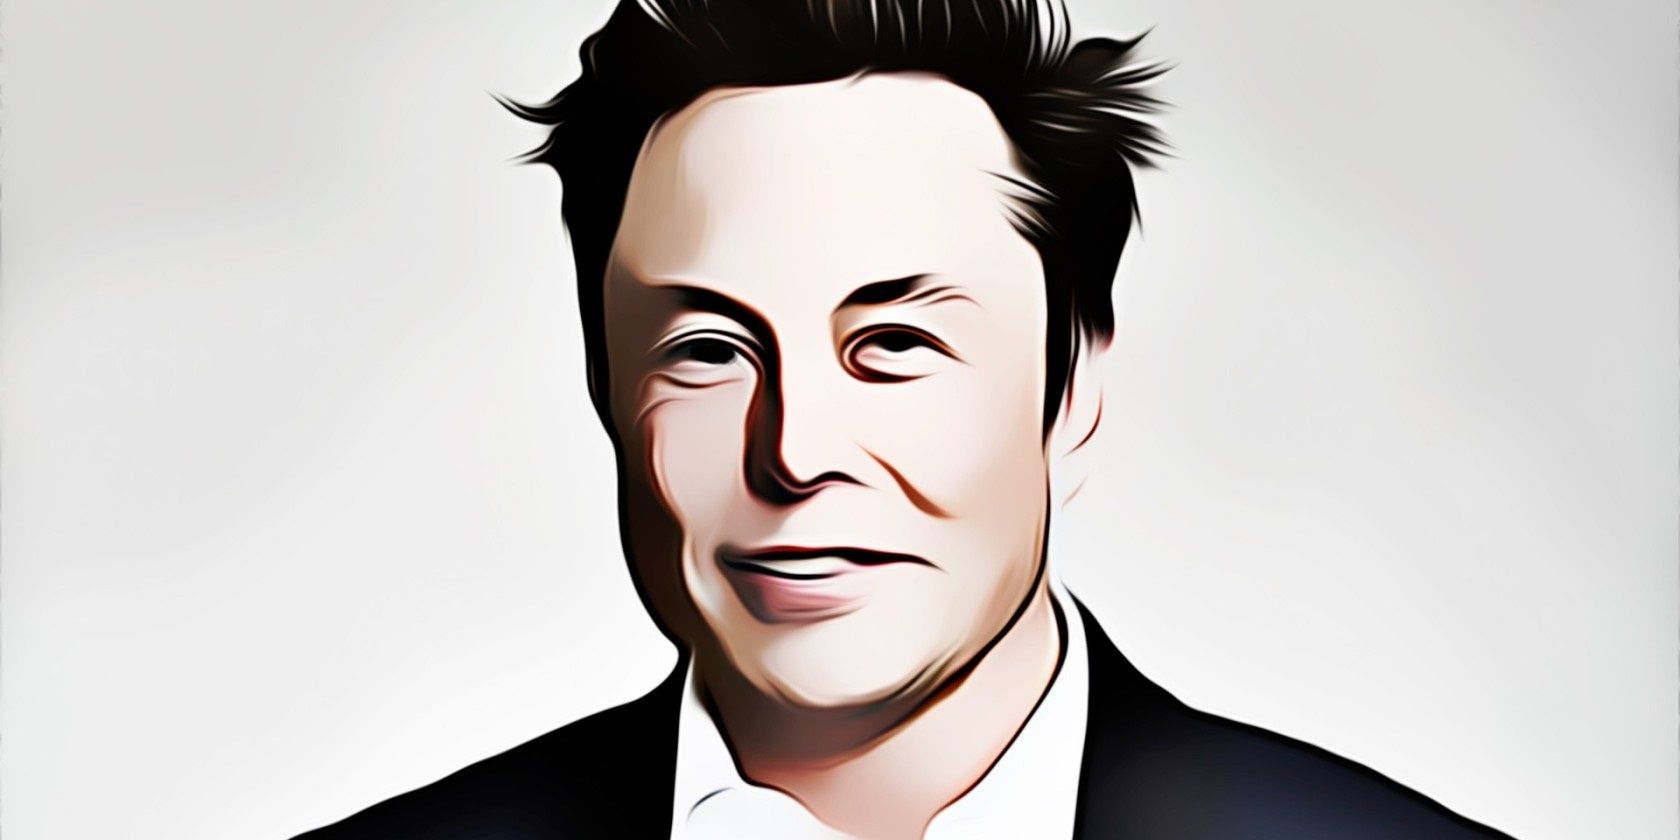 Elon Musk's animated face